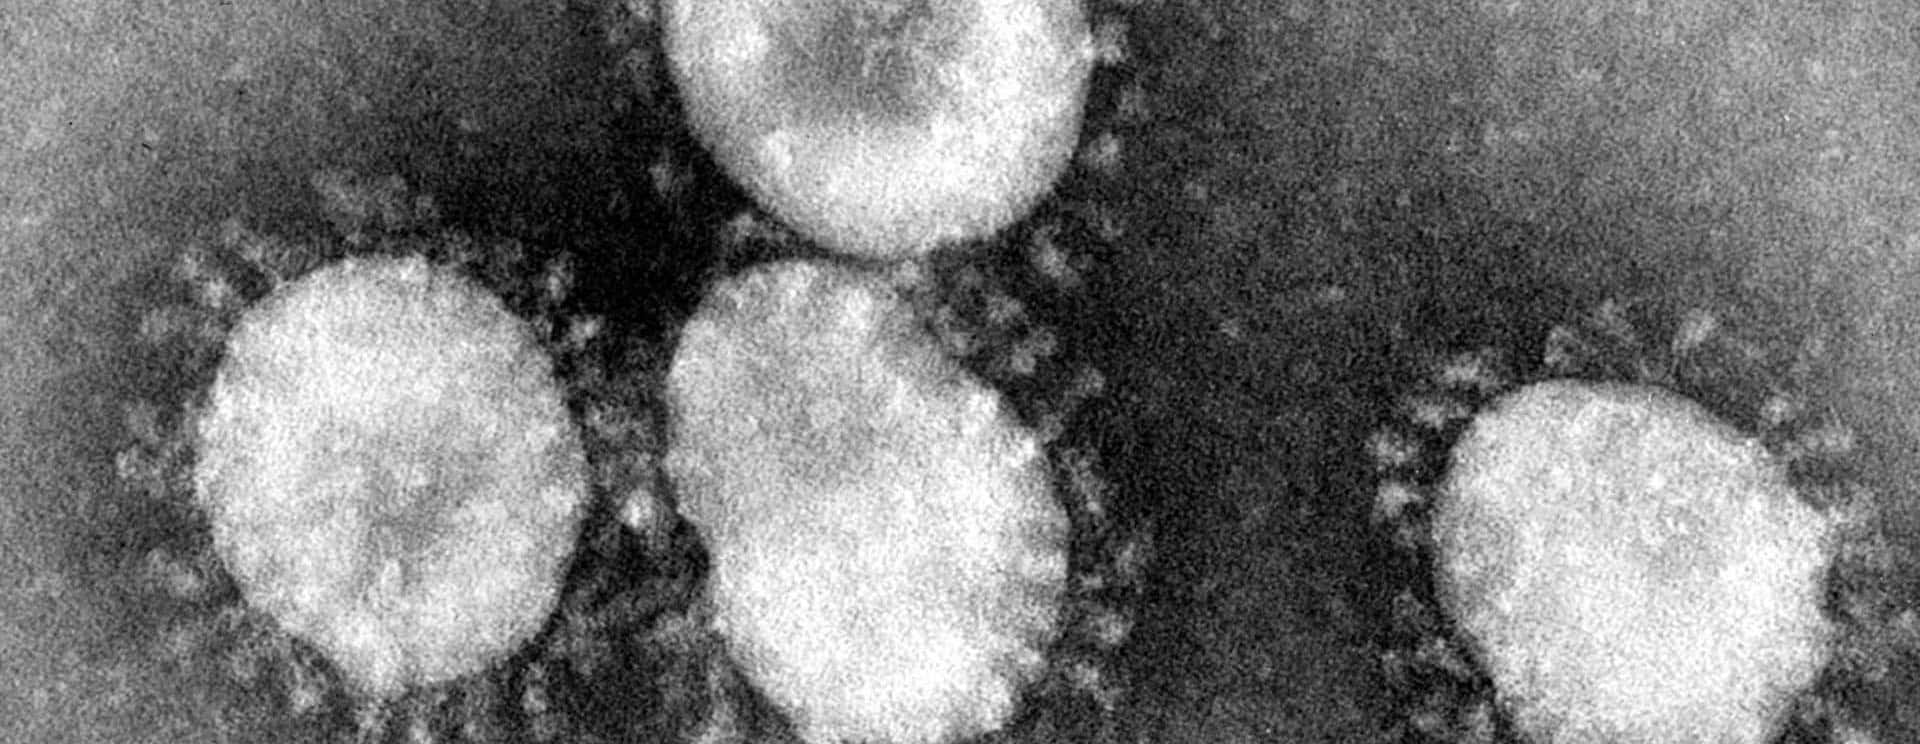 coronaviruses-jpg-52